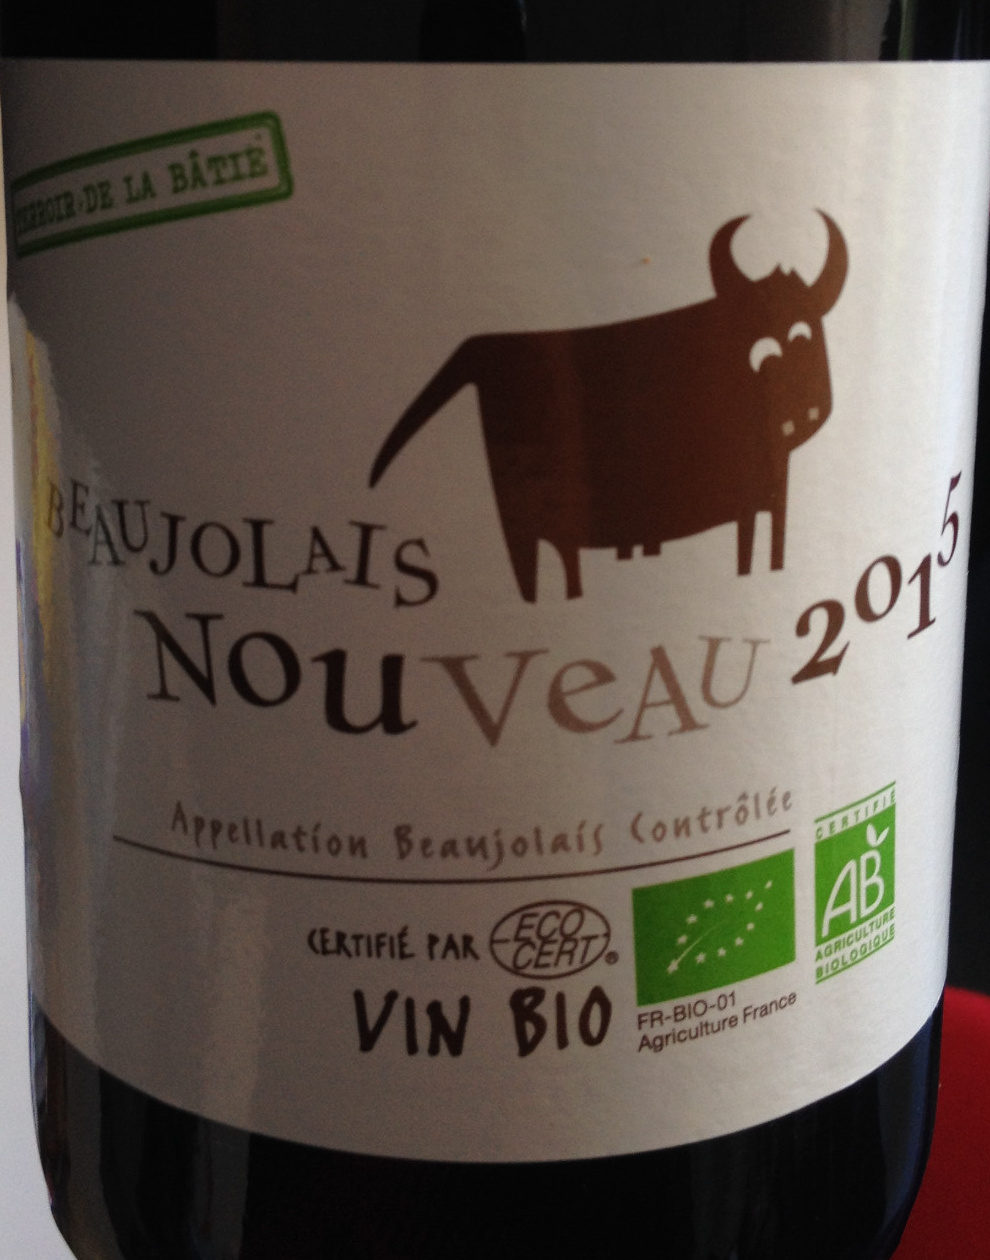 Beaujolais nouveau 2015 - Product - fr